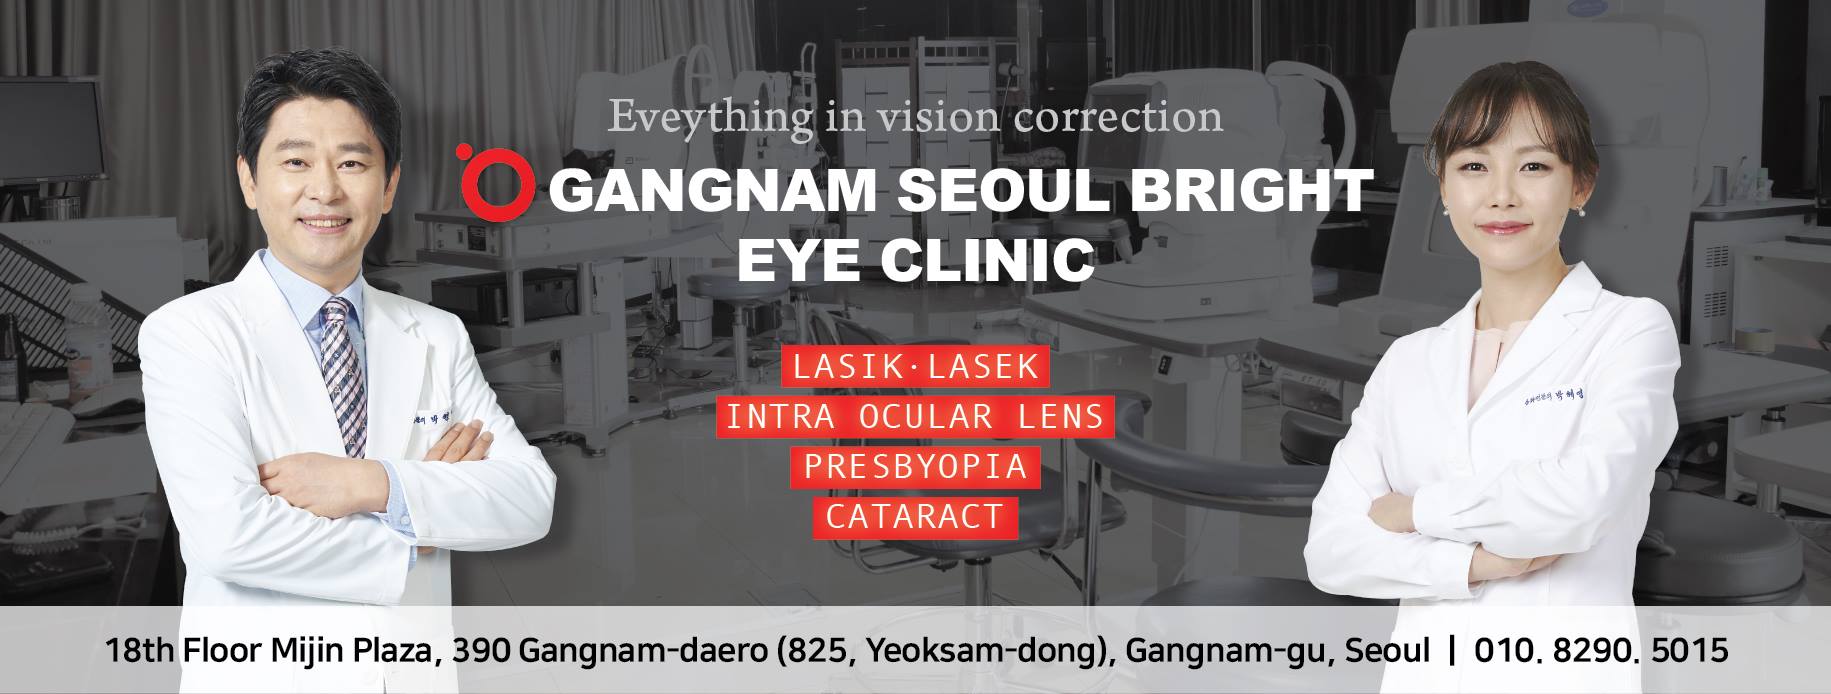 Gangnam Seoul Bright Eye Clinic | Gangnam-gu, Seoul